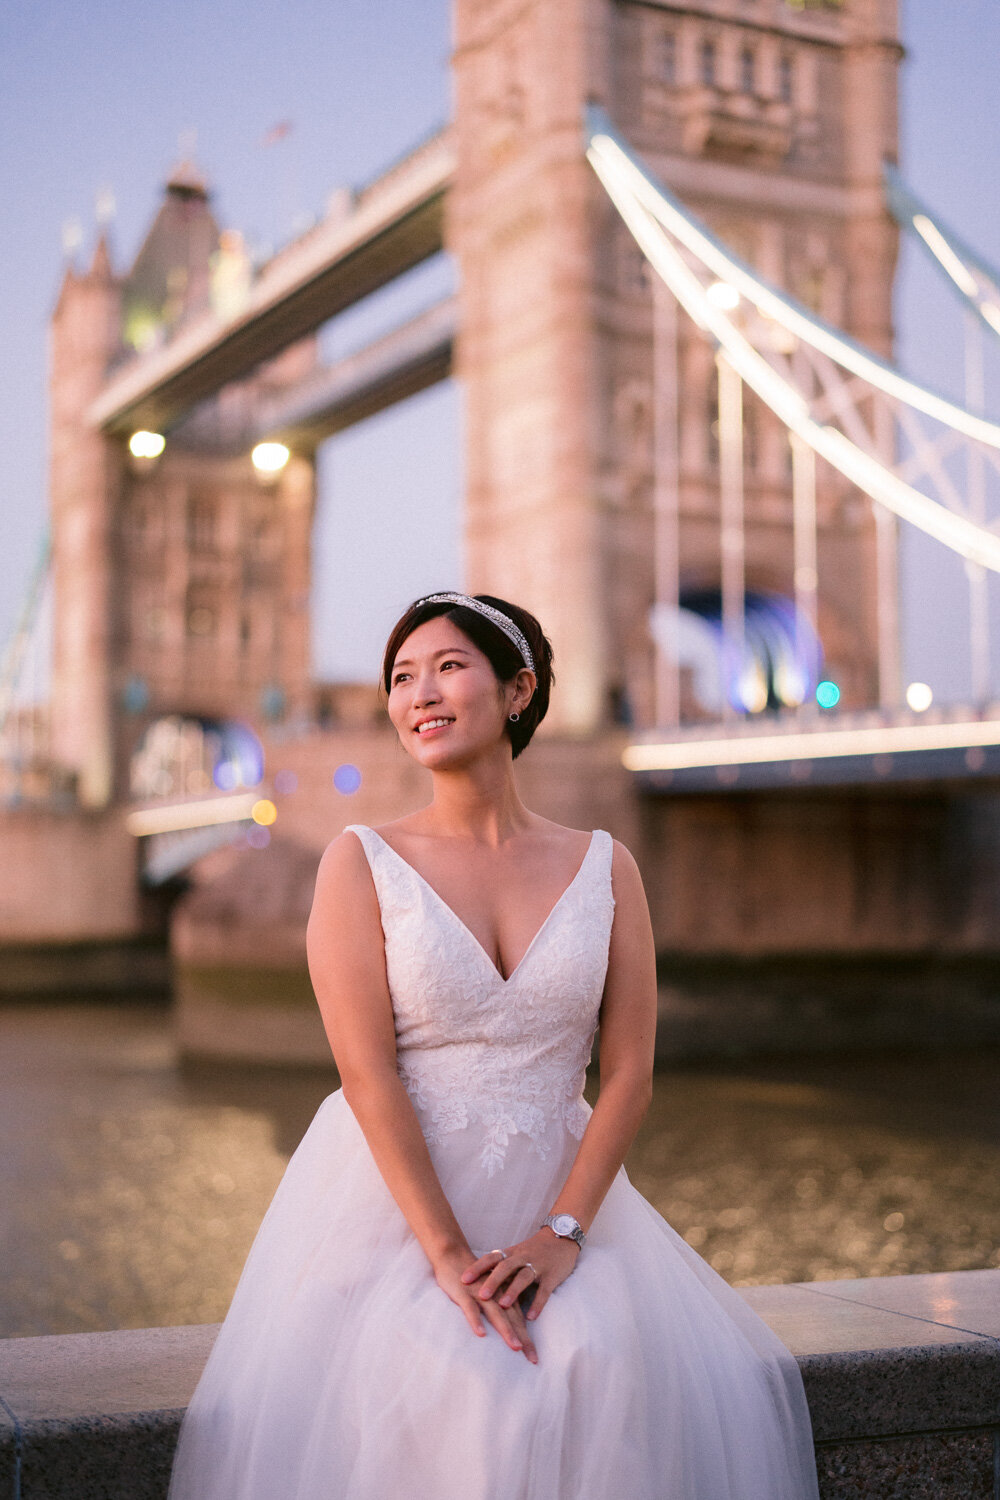 Wedding portrait in London